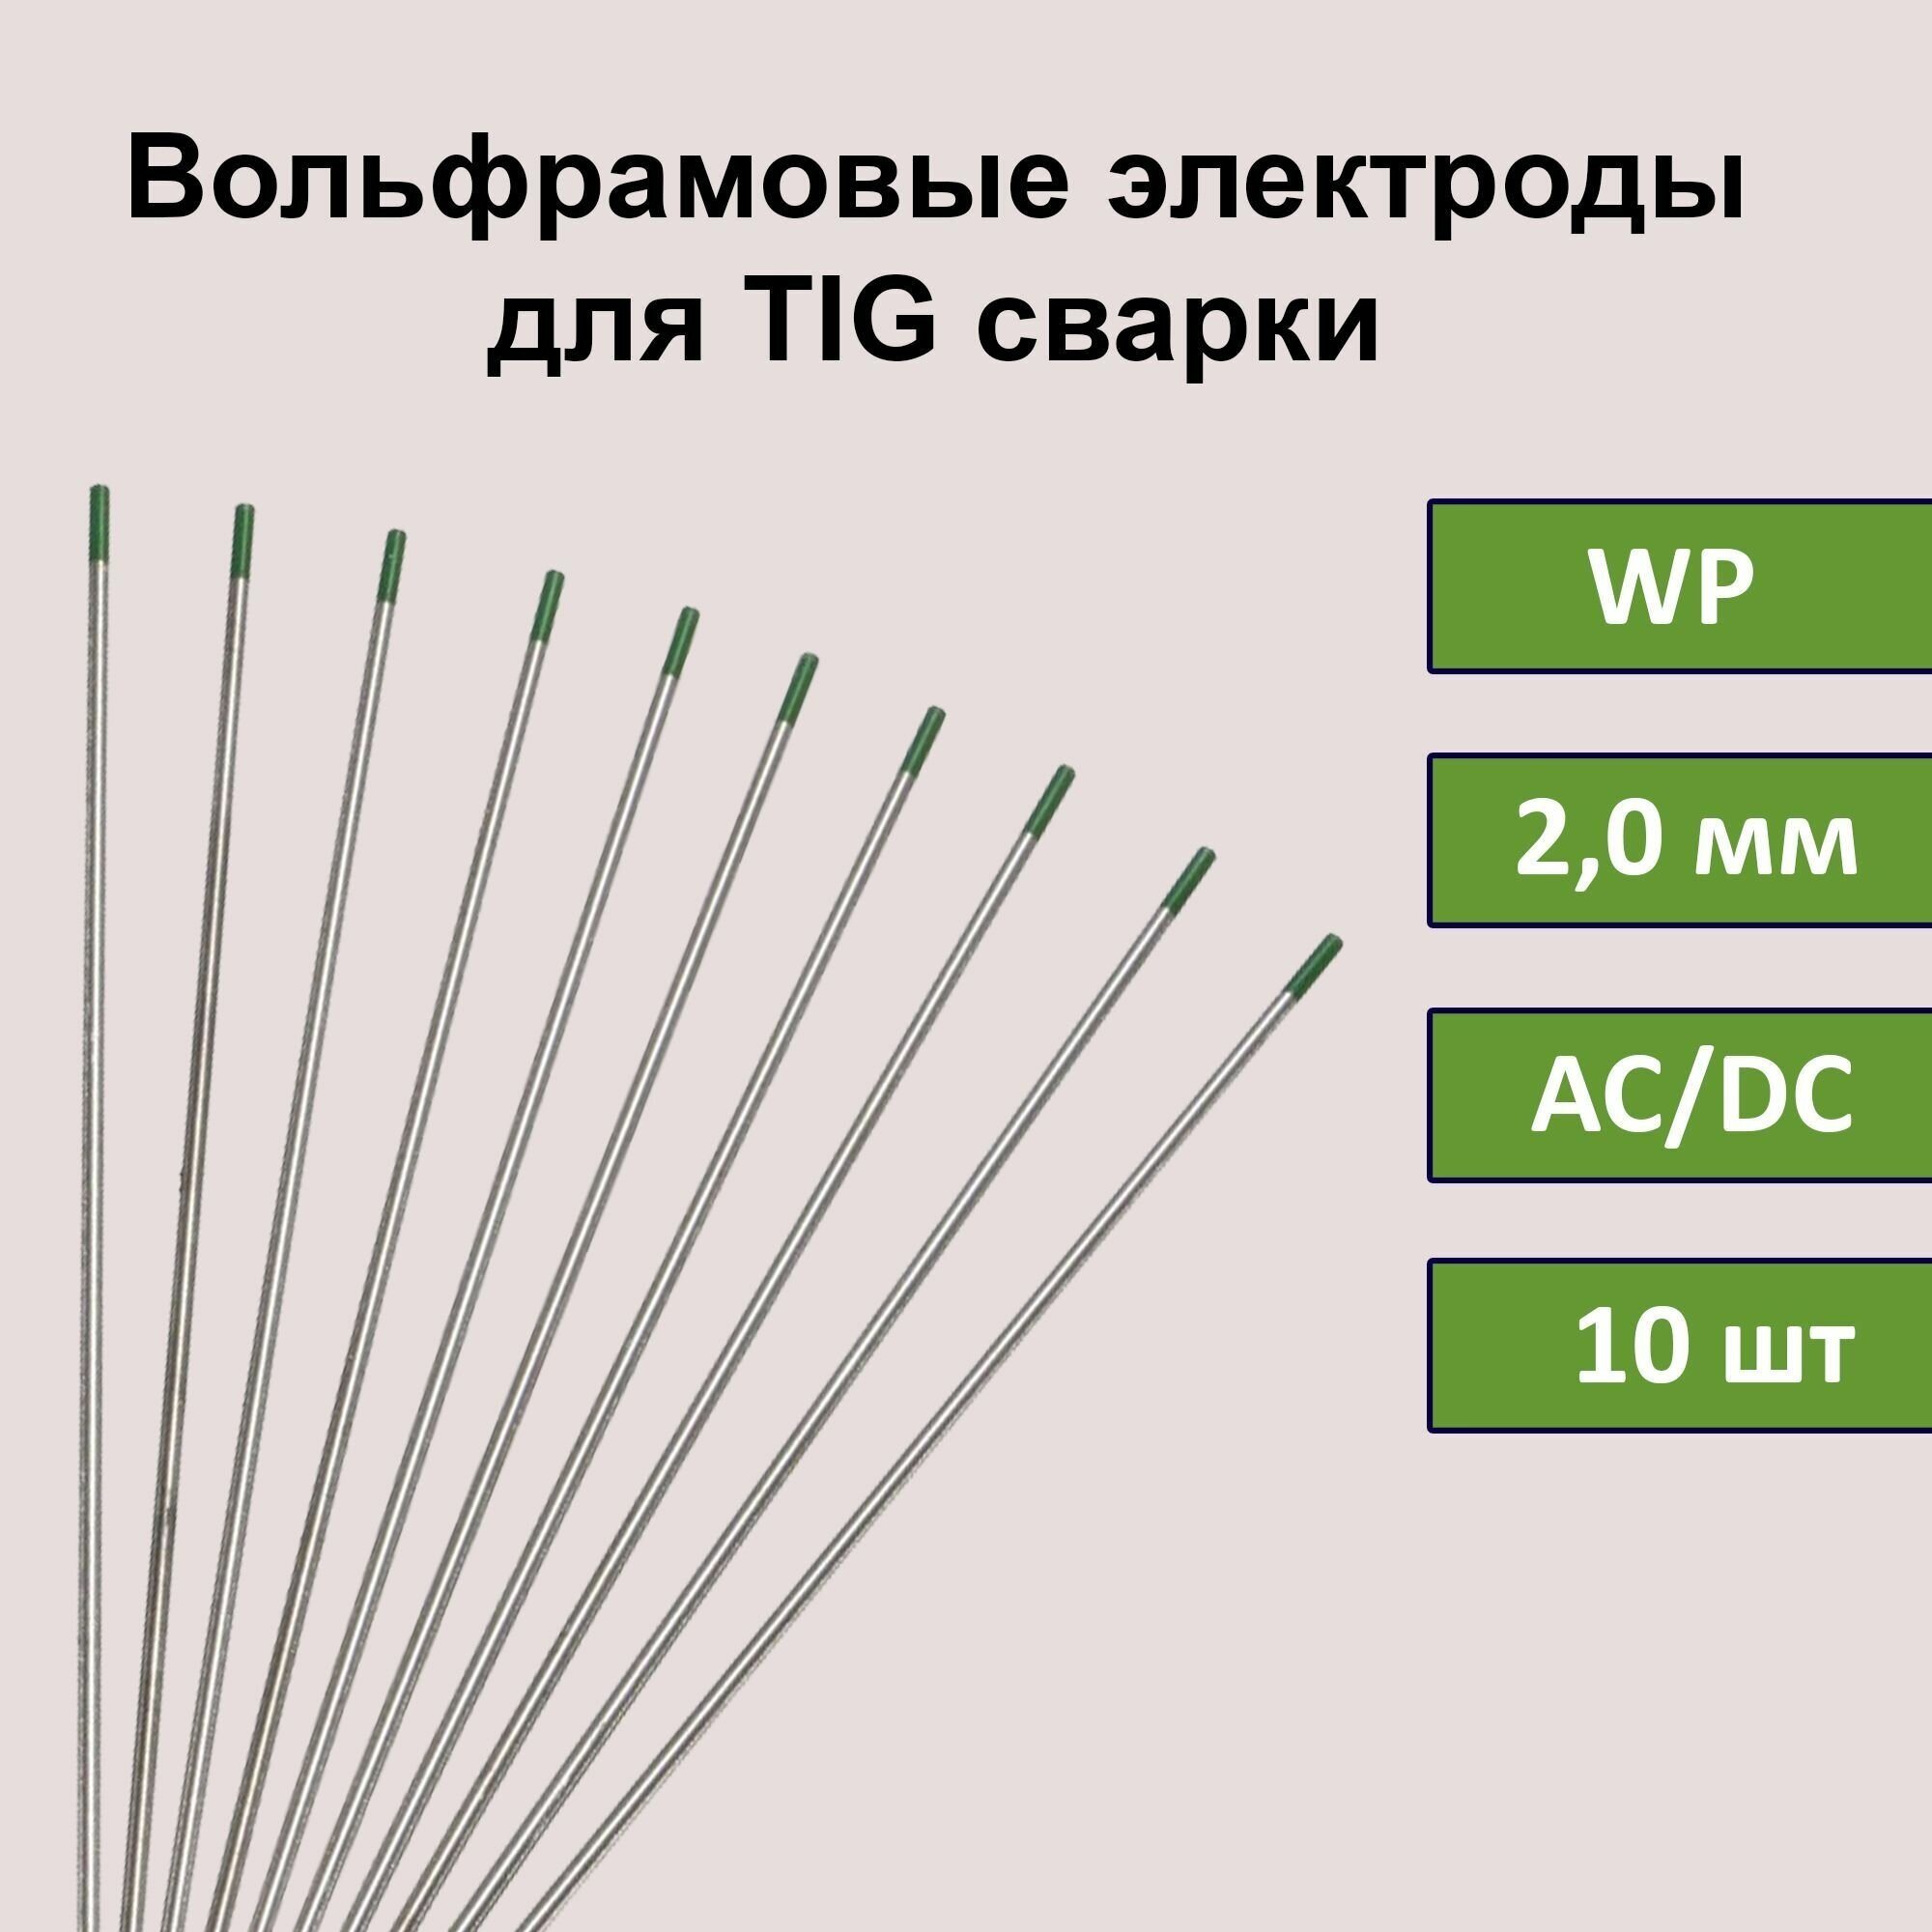 Вольфрамовые электроды для TIG сварки WP 2,0 мм 175 мм (зеленый) (10шт)